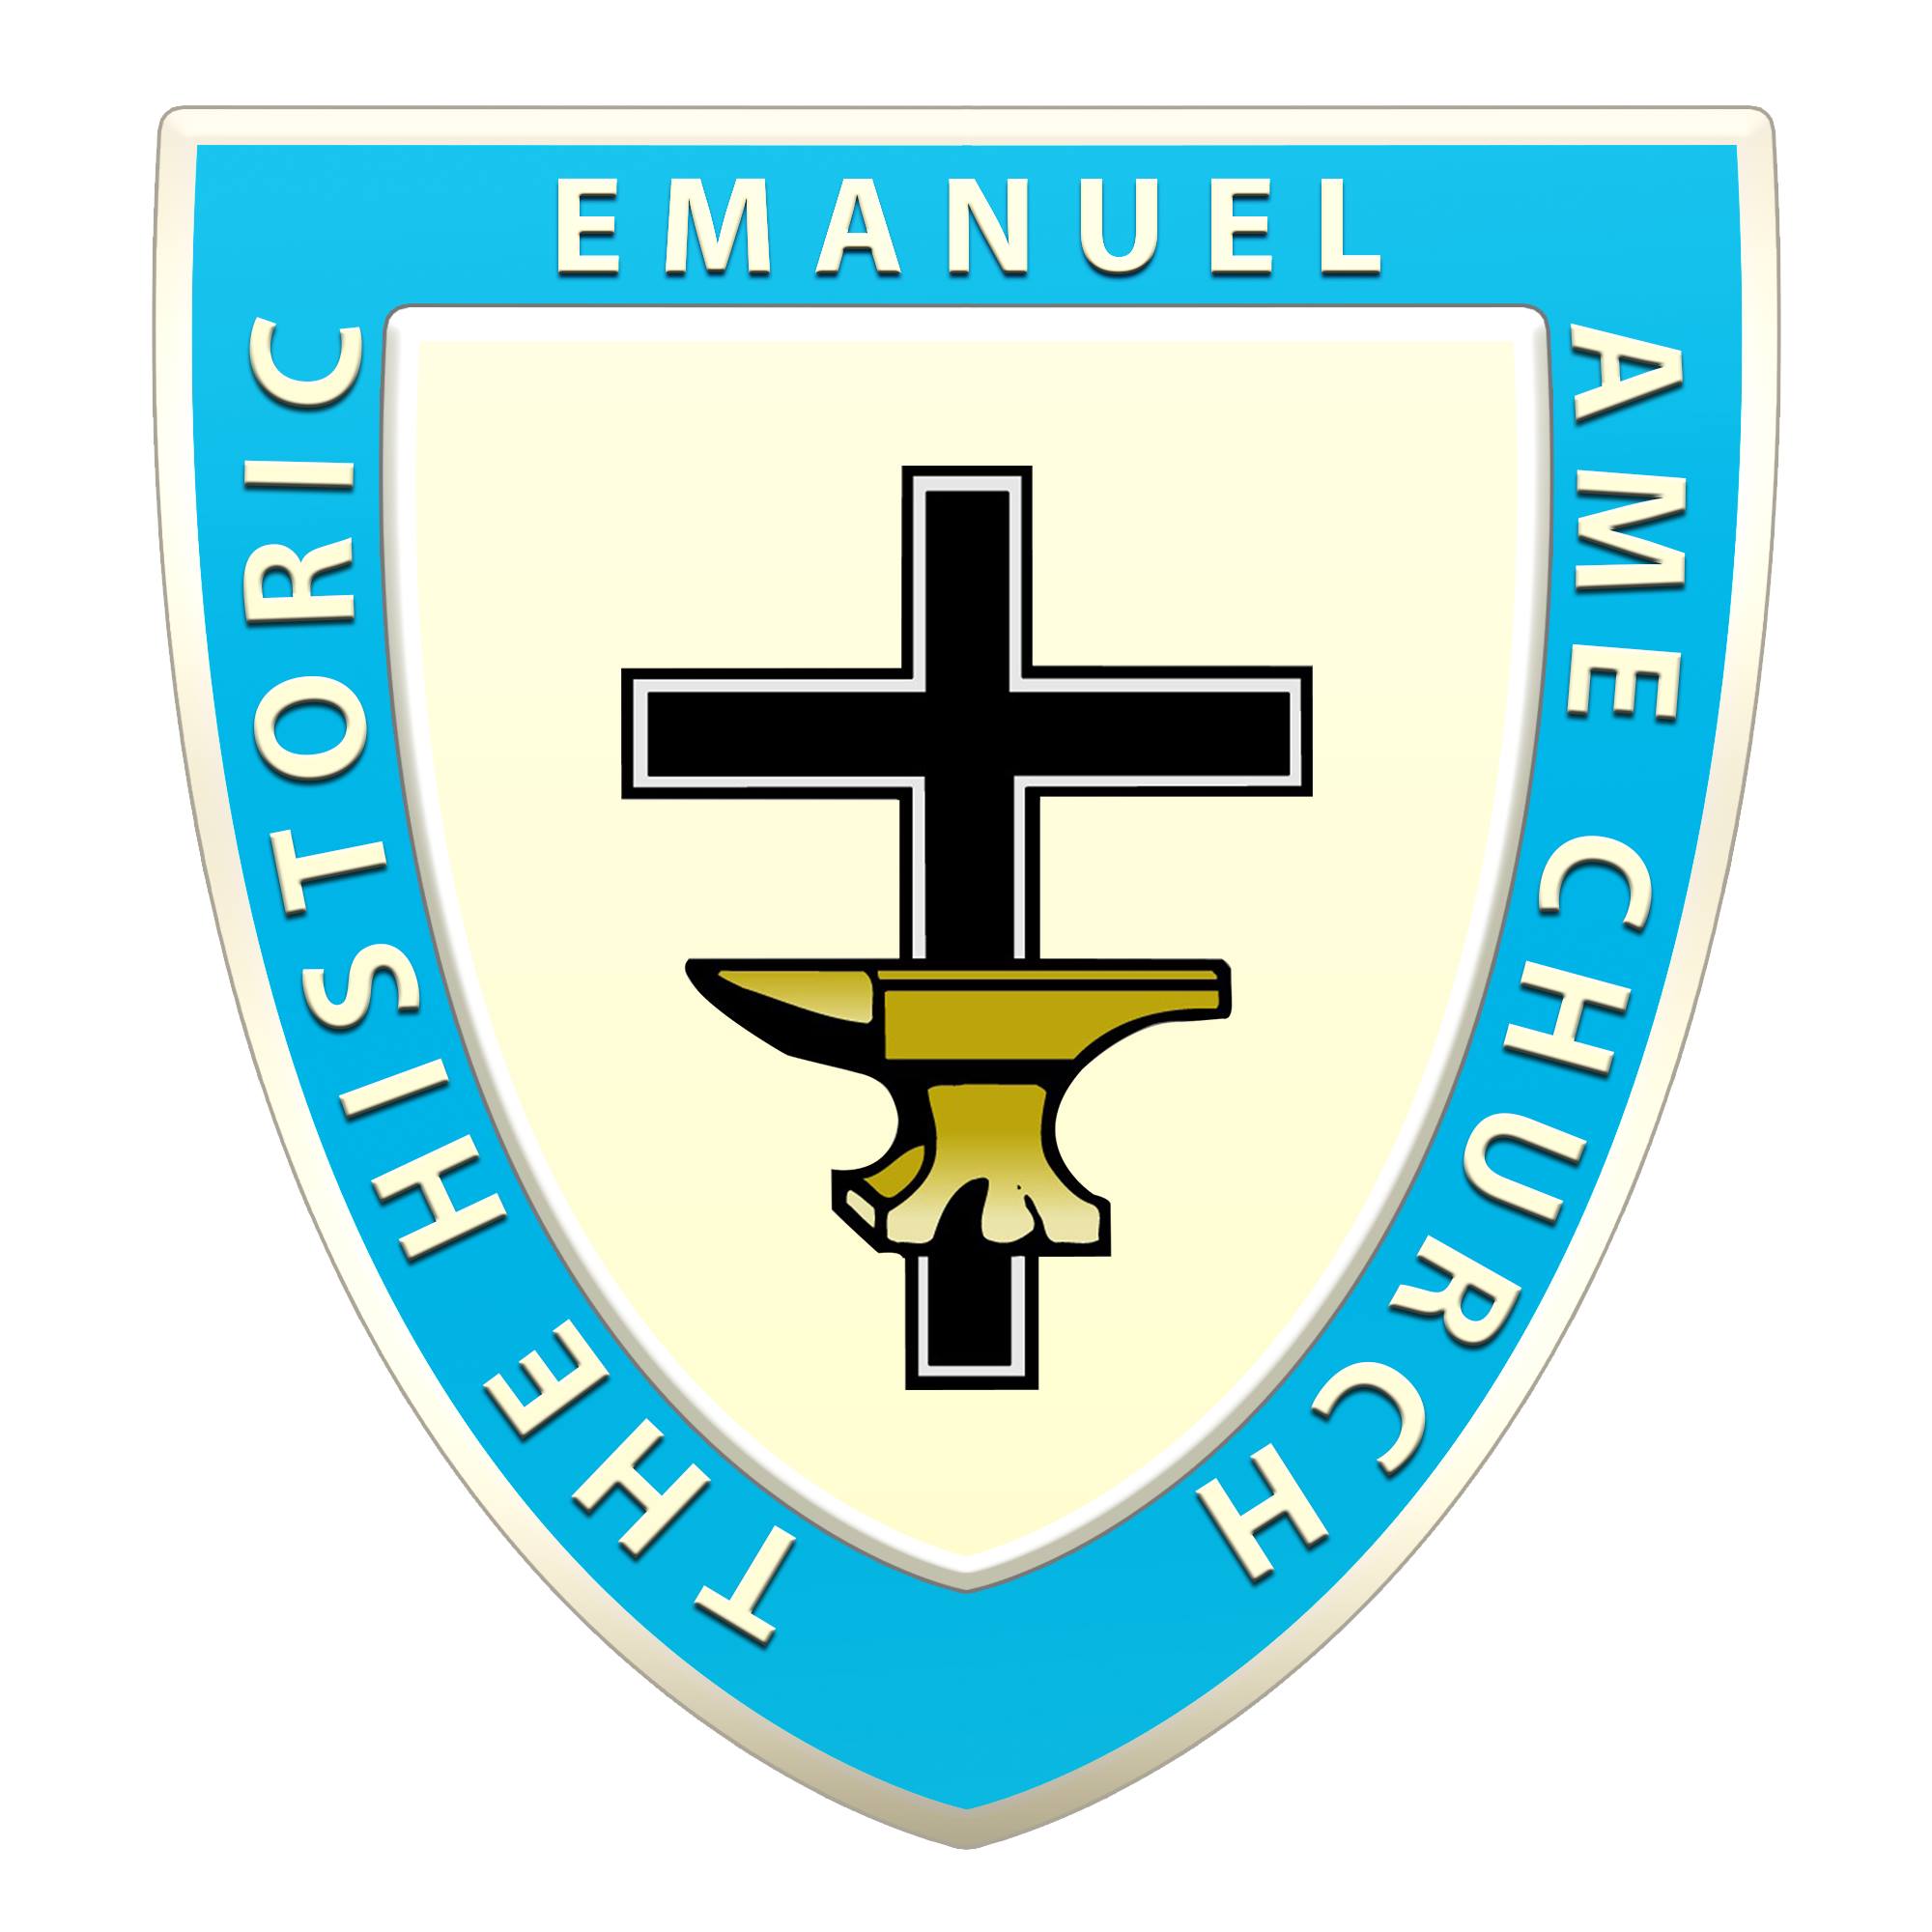 Emmanuel AME Church